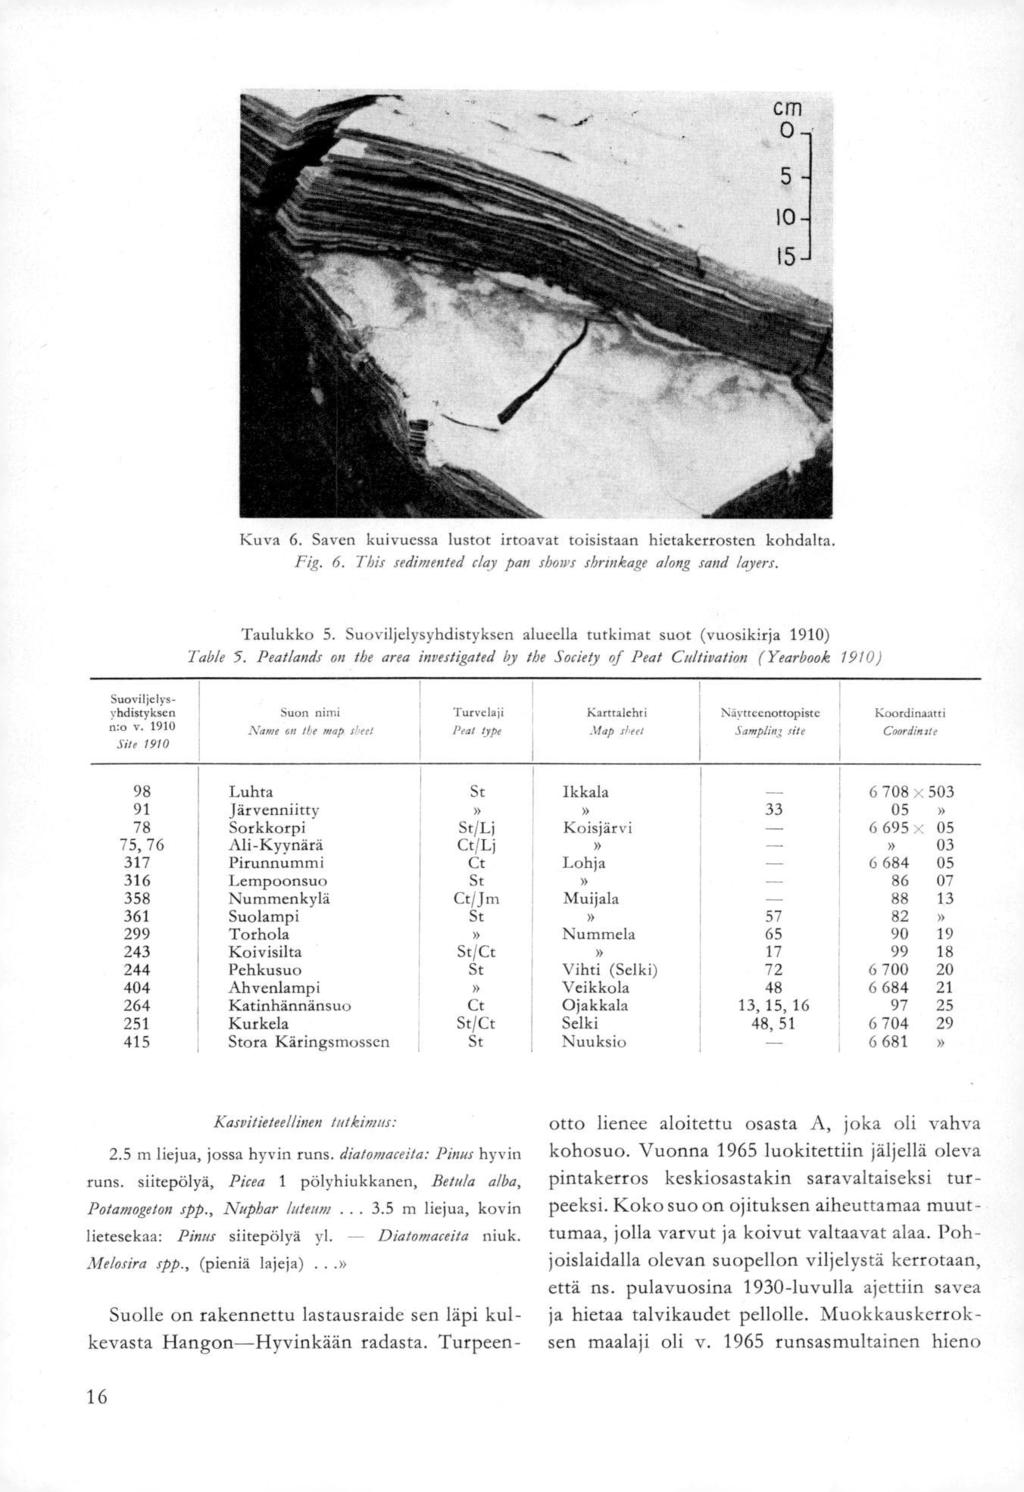 Kuva 6. Saven kuivuessa lustot irtoavat toisistaan hietakerrosten kohdalta. Fig. 6. This sedimented eksy pan show shrmkage along sand layers. Taulukko 5.